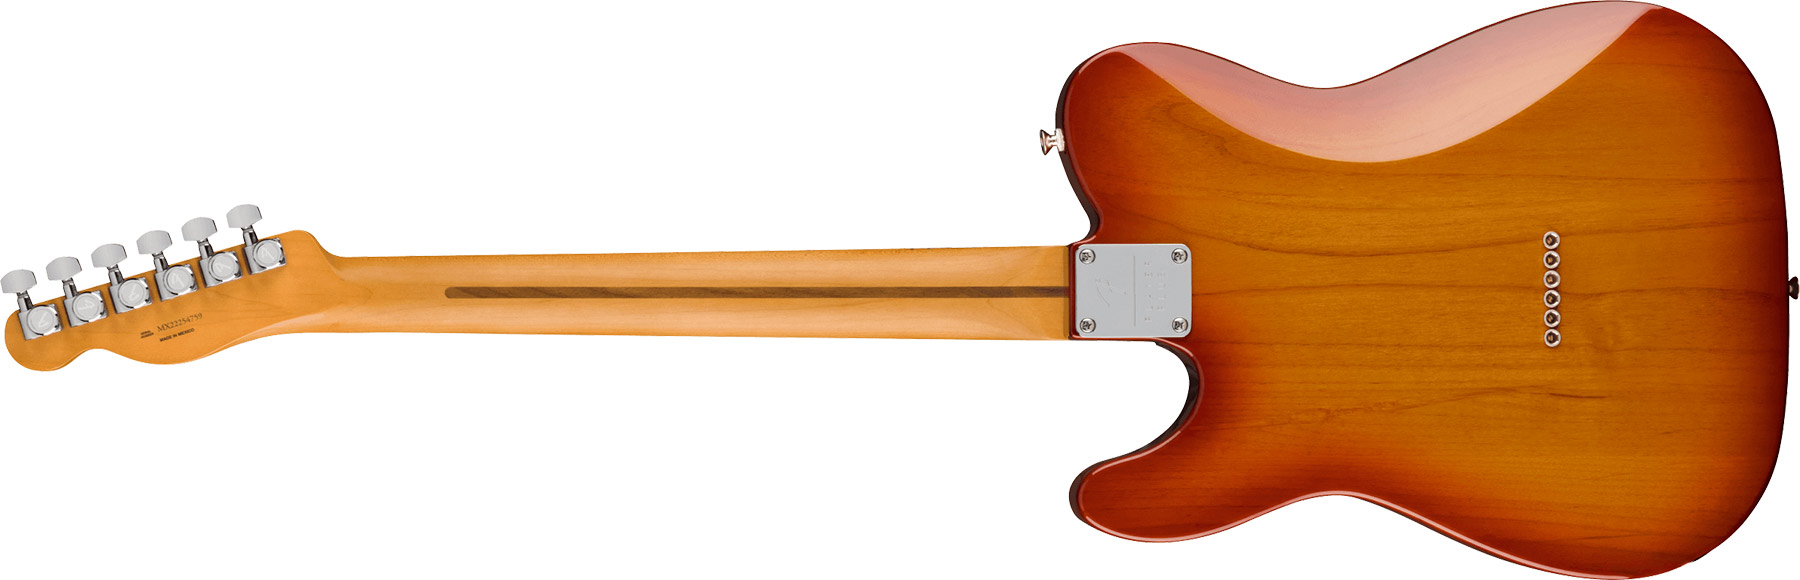 Fender Tele Player Plus Mex 2023 2s Ht Mn - Sienna Sunburst - Televorm elektrische gitaar - Variation 1